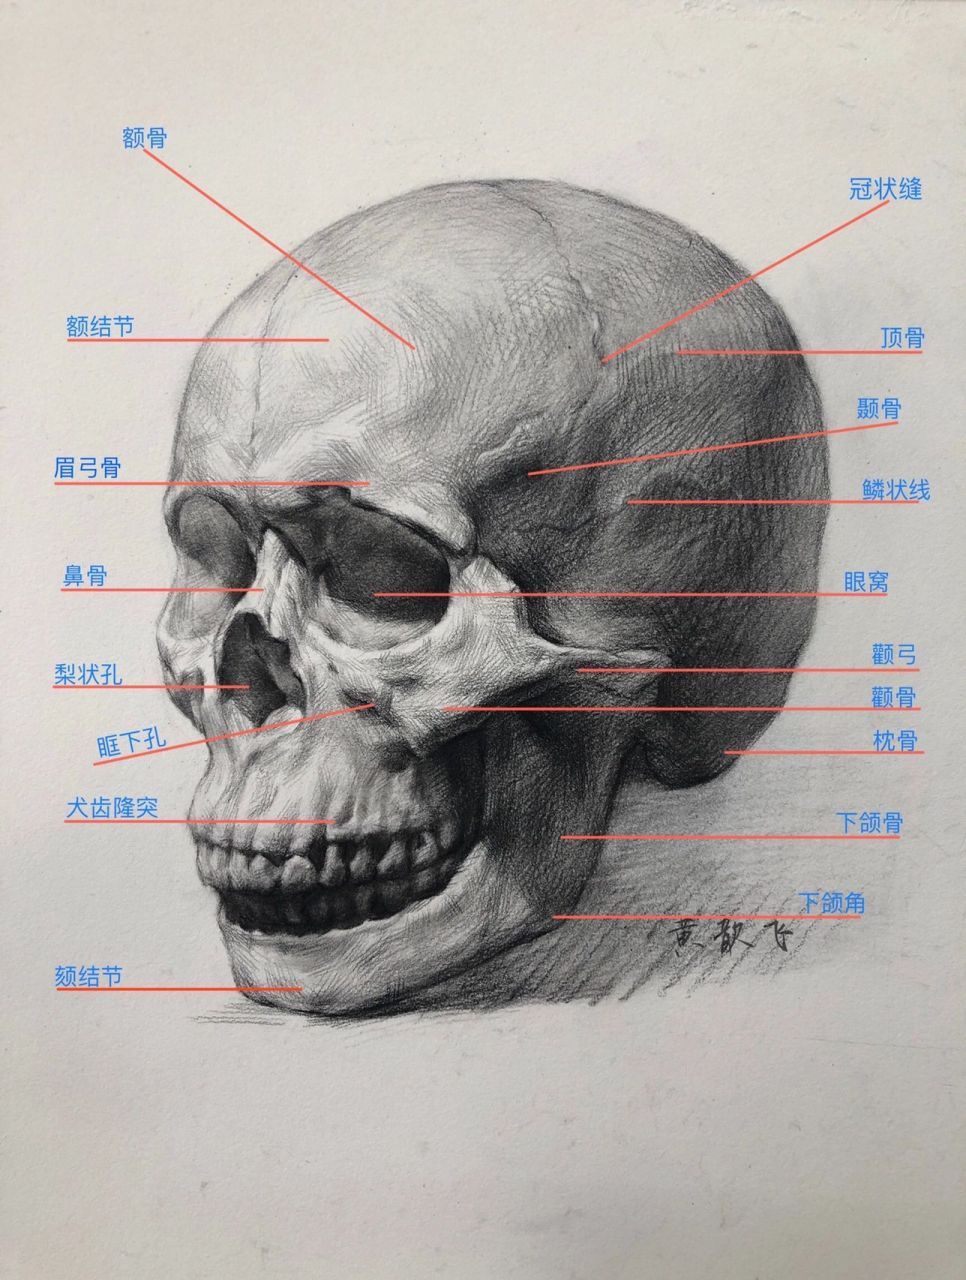 头像骨骼结构素描讲解图片